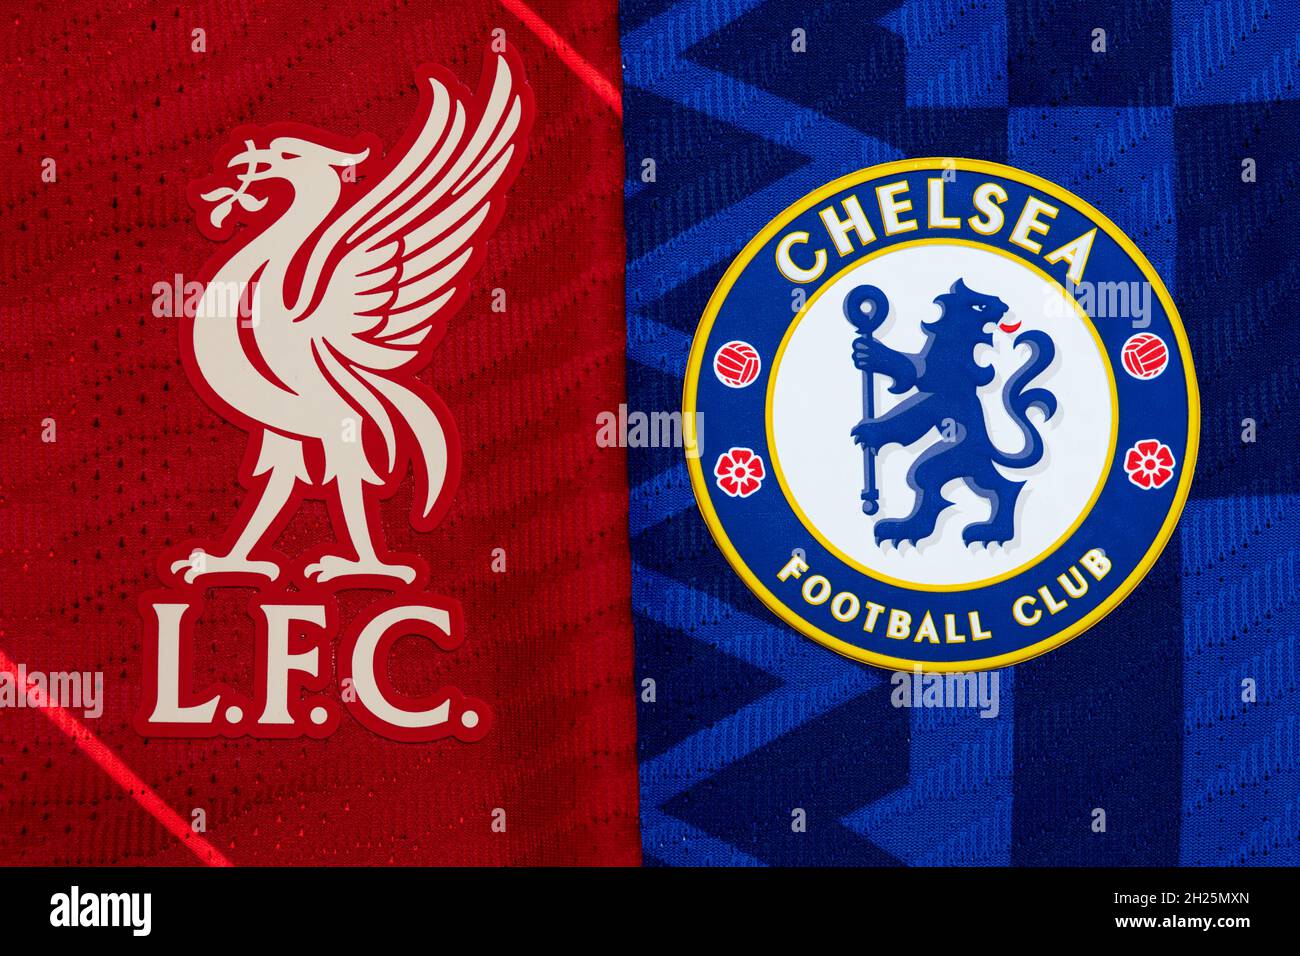 Nahaufnahme des Vereinswappens von Liverpool & Chelsea. Stockfoto